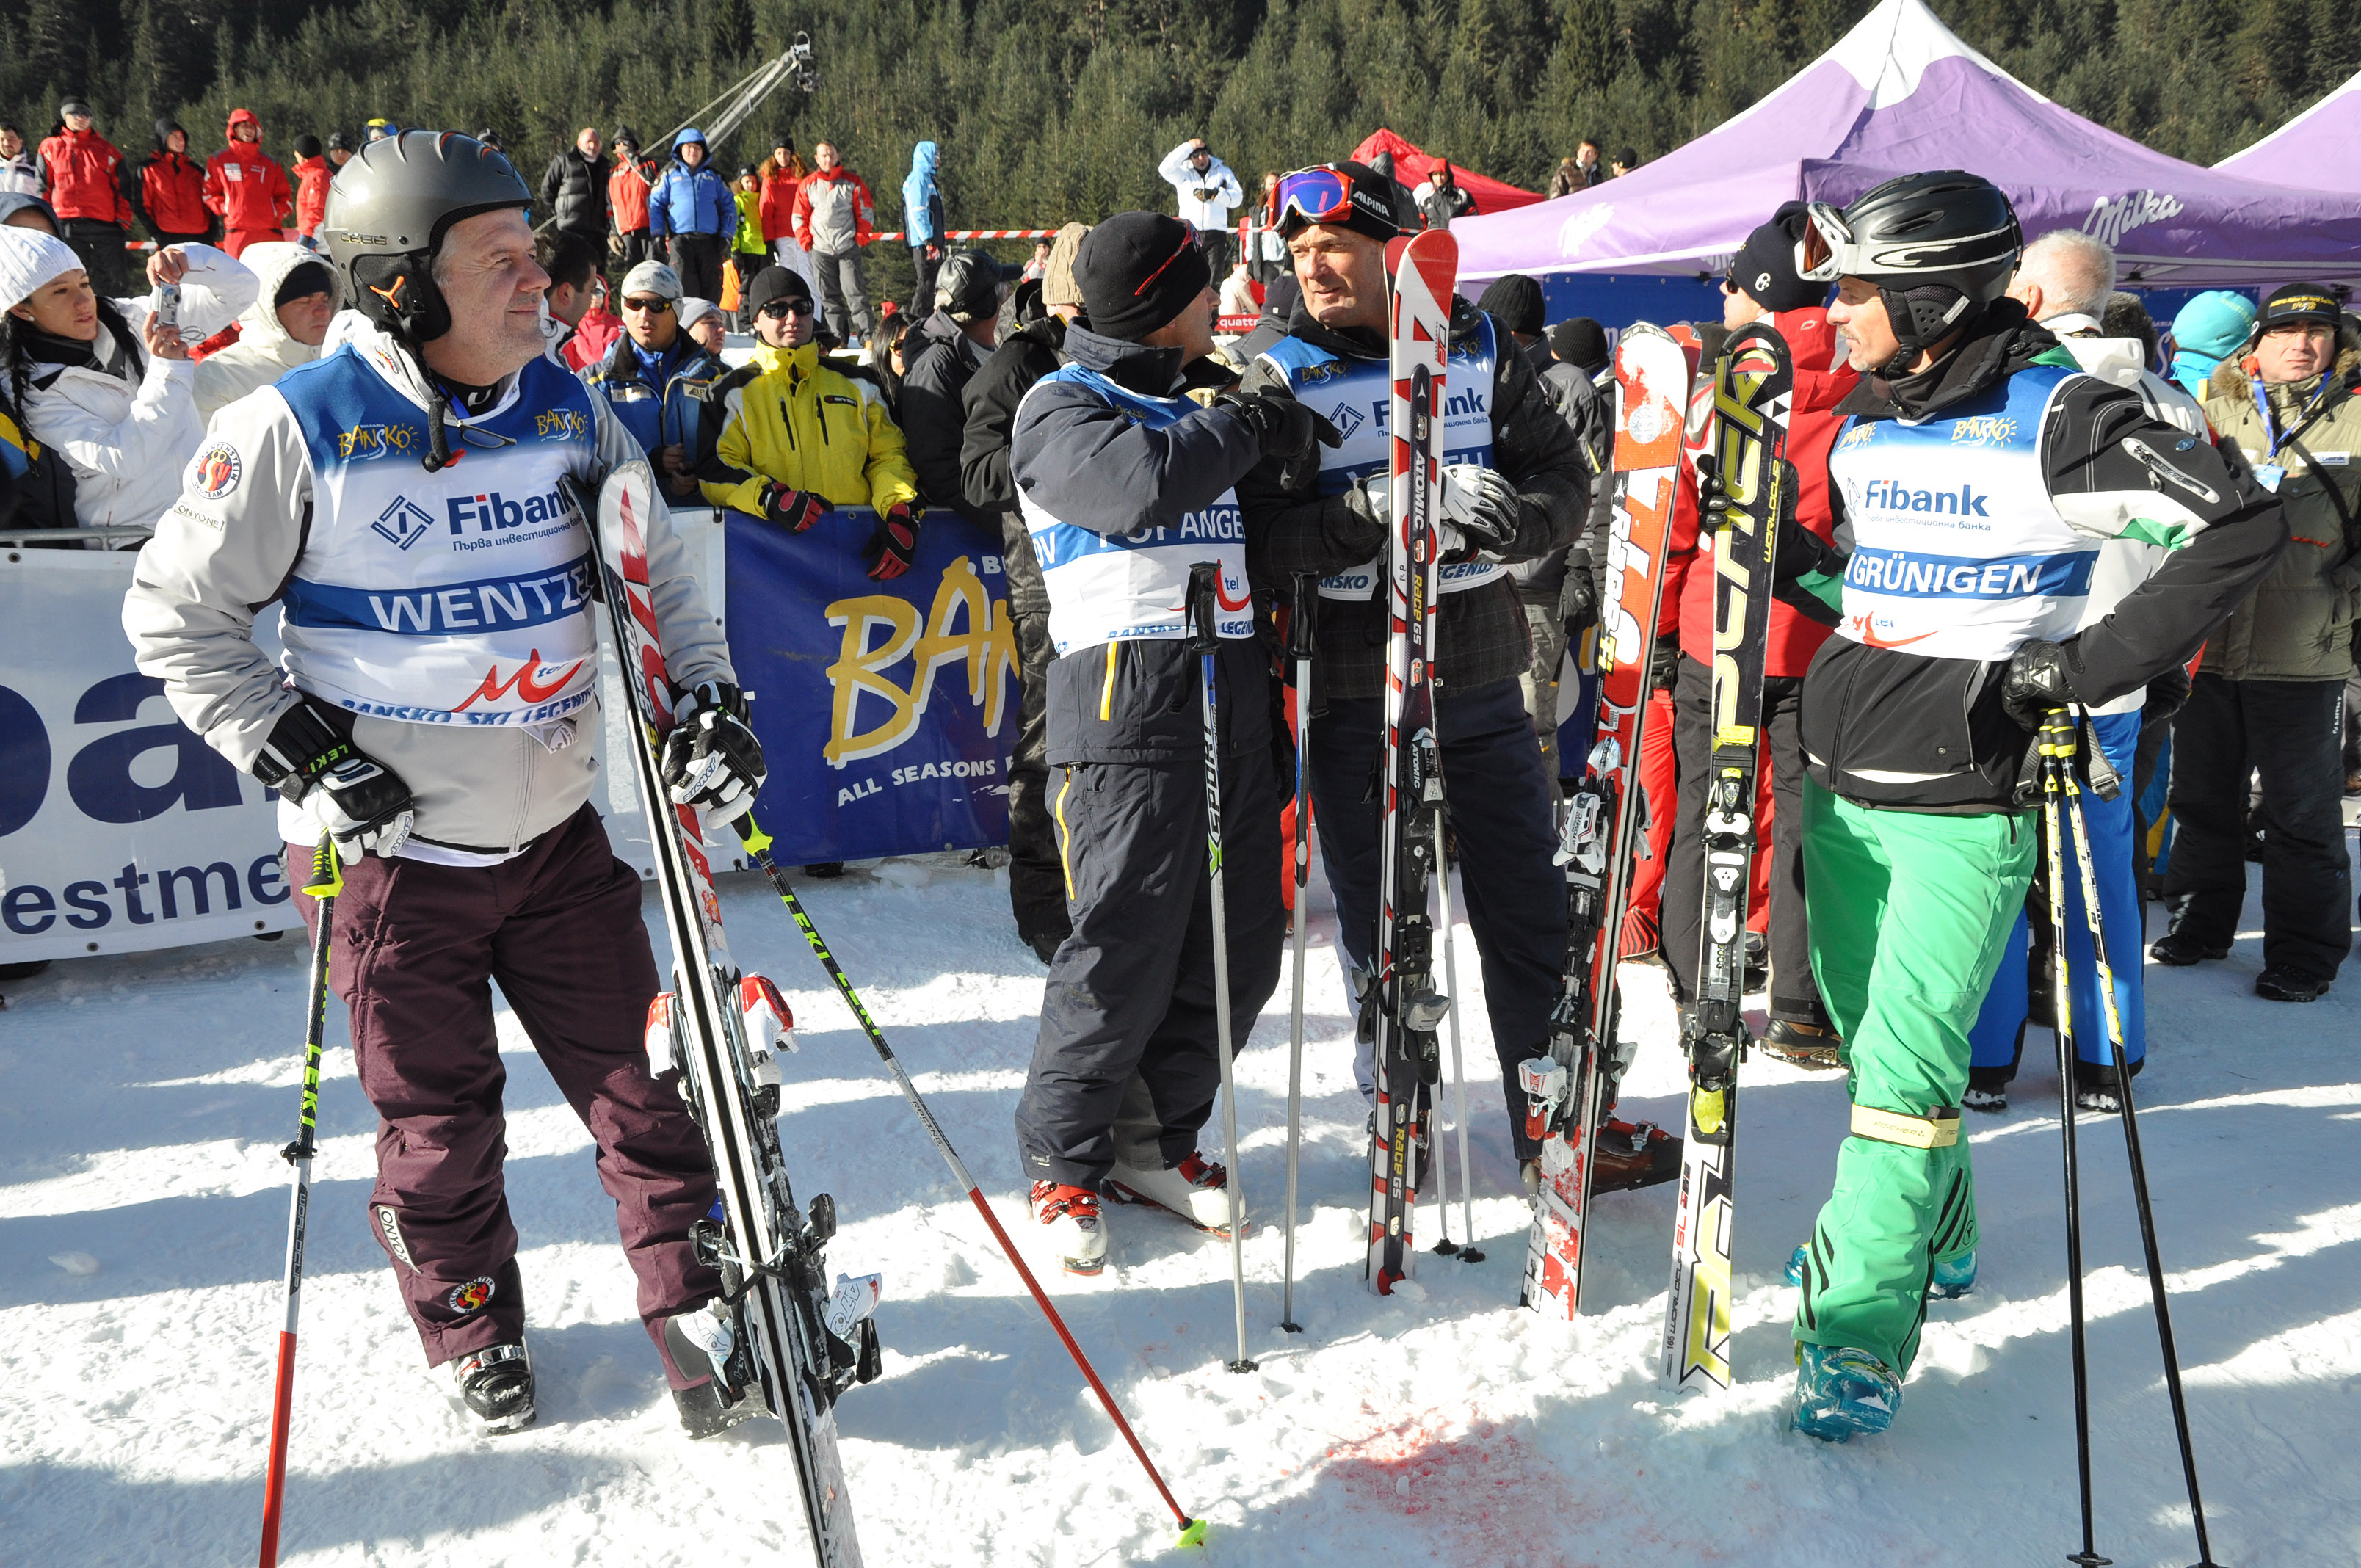 Утре на писта ”Юлен” откриват скисезона в Банско